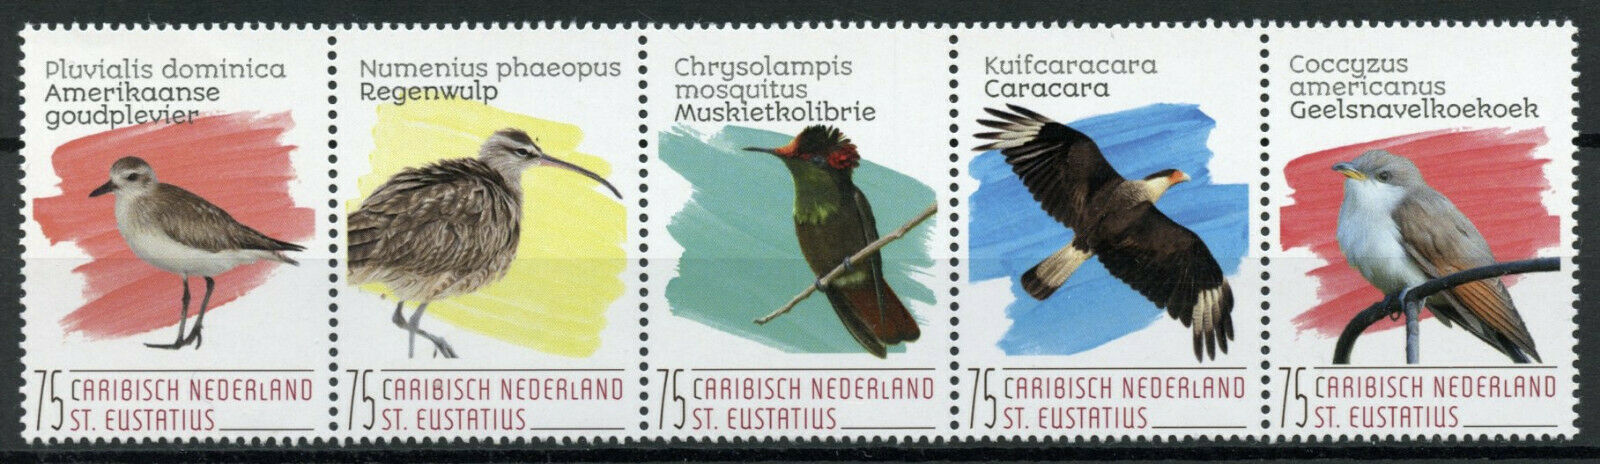 St Eustatius Caribbean Netherlands Birds on Stamps 2020 MNH Waders 5v Strip